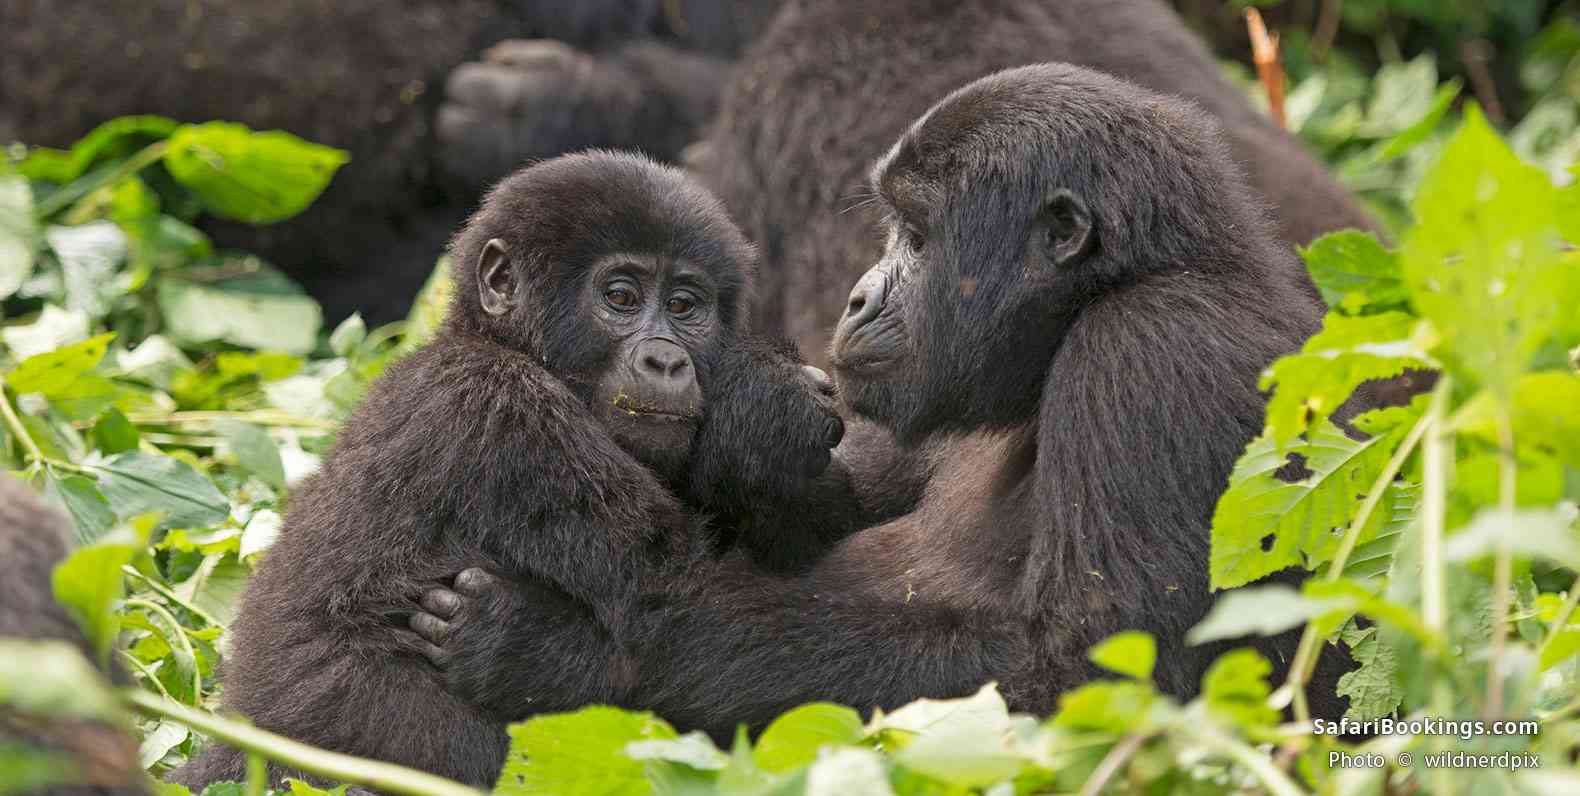 01-Gorilla_Trekking_Uganda_Versus_Rwanda_Which_Is_Better-BW-1600px